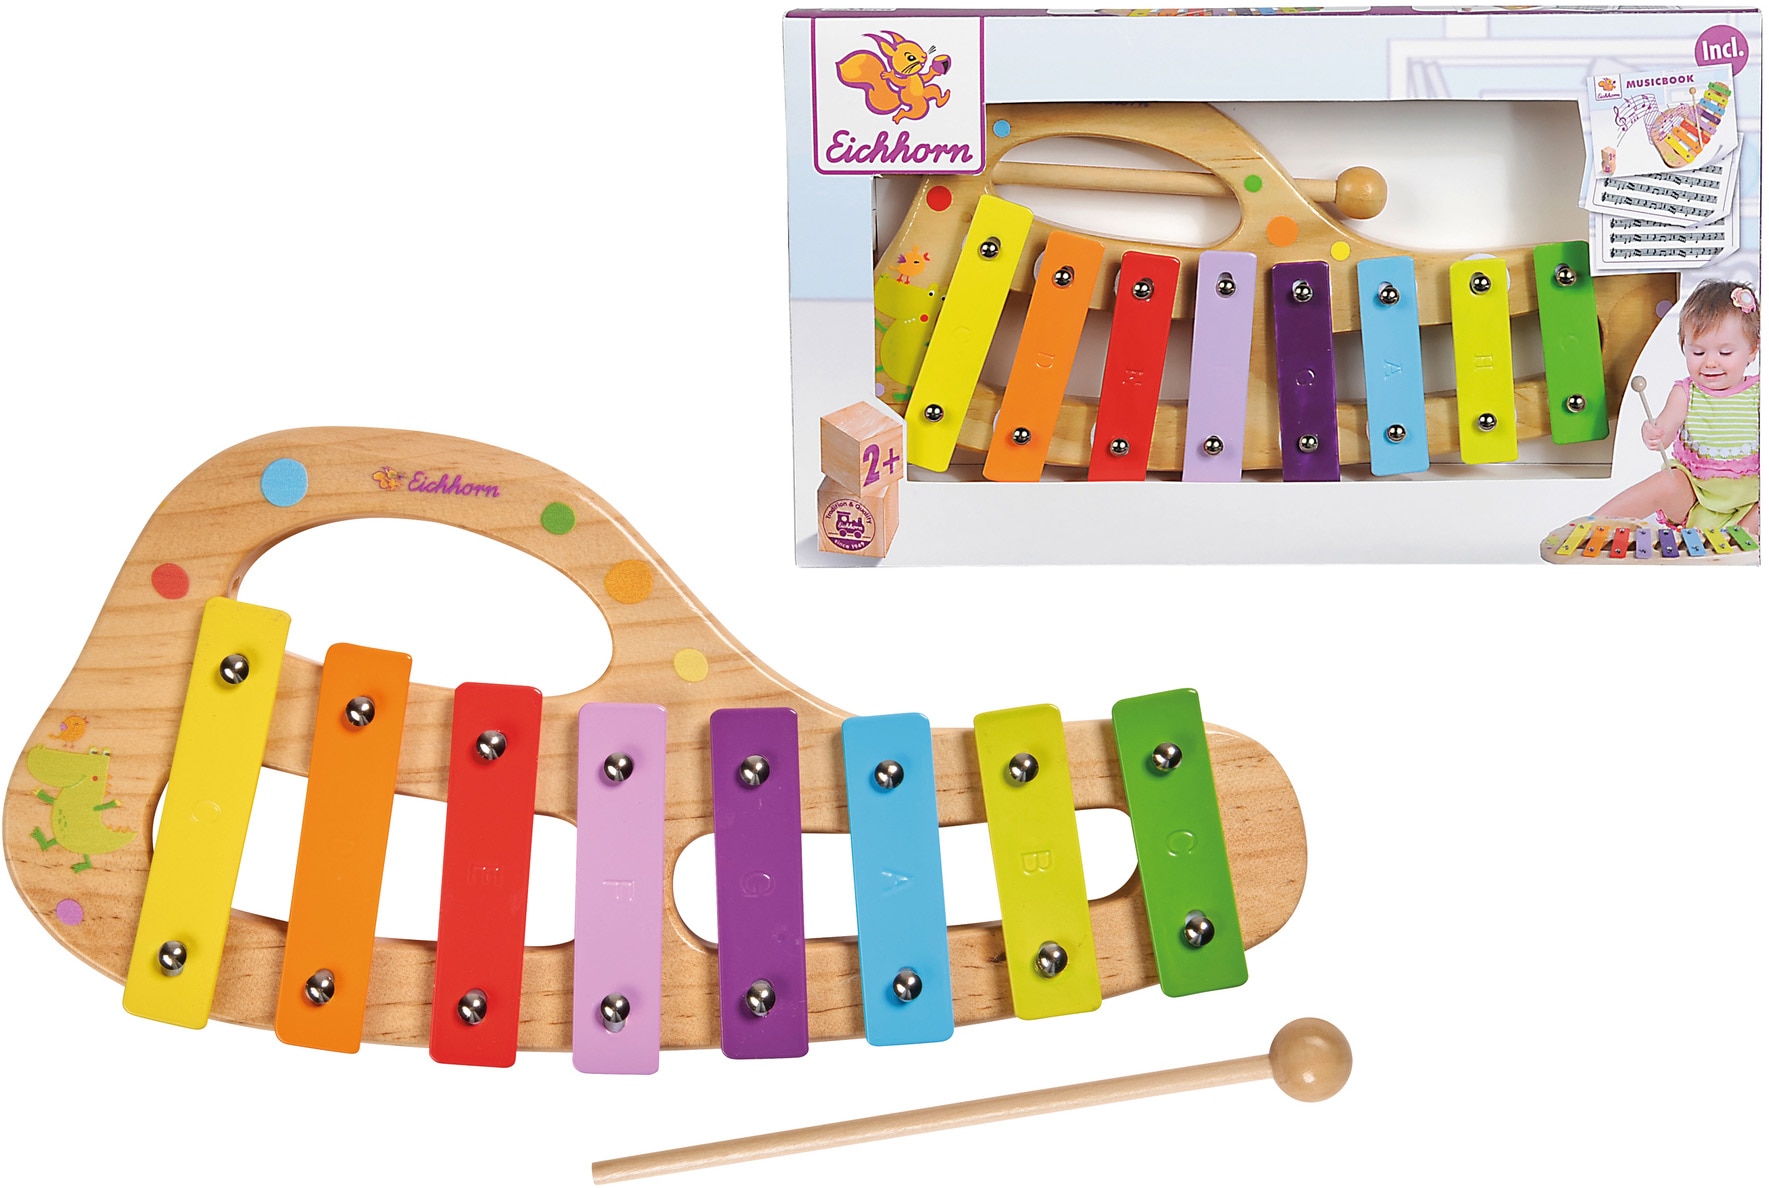 Spielzeug-Musikinstrument »Xylophon«, inkl. Liederbuch